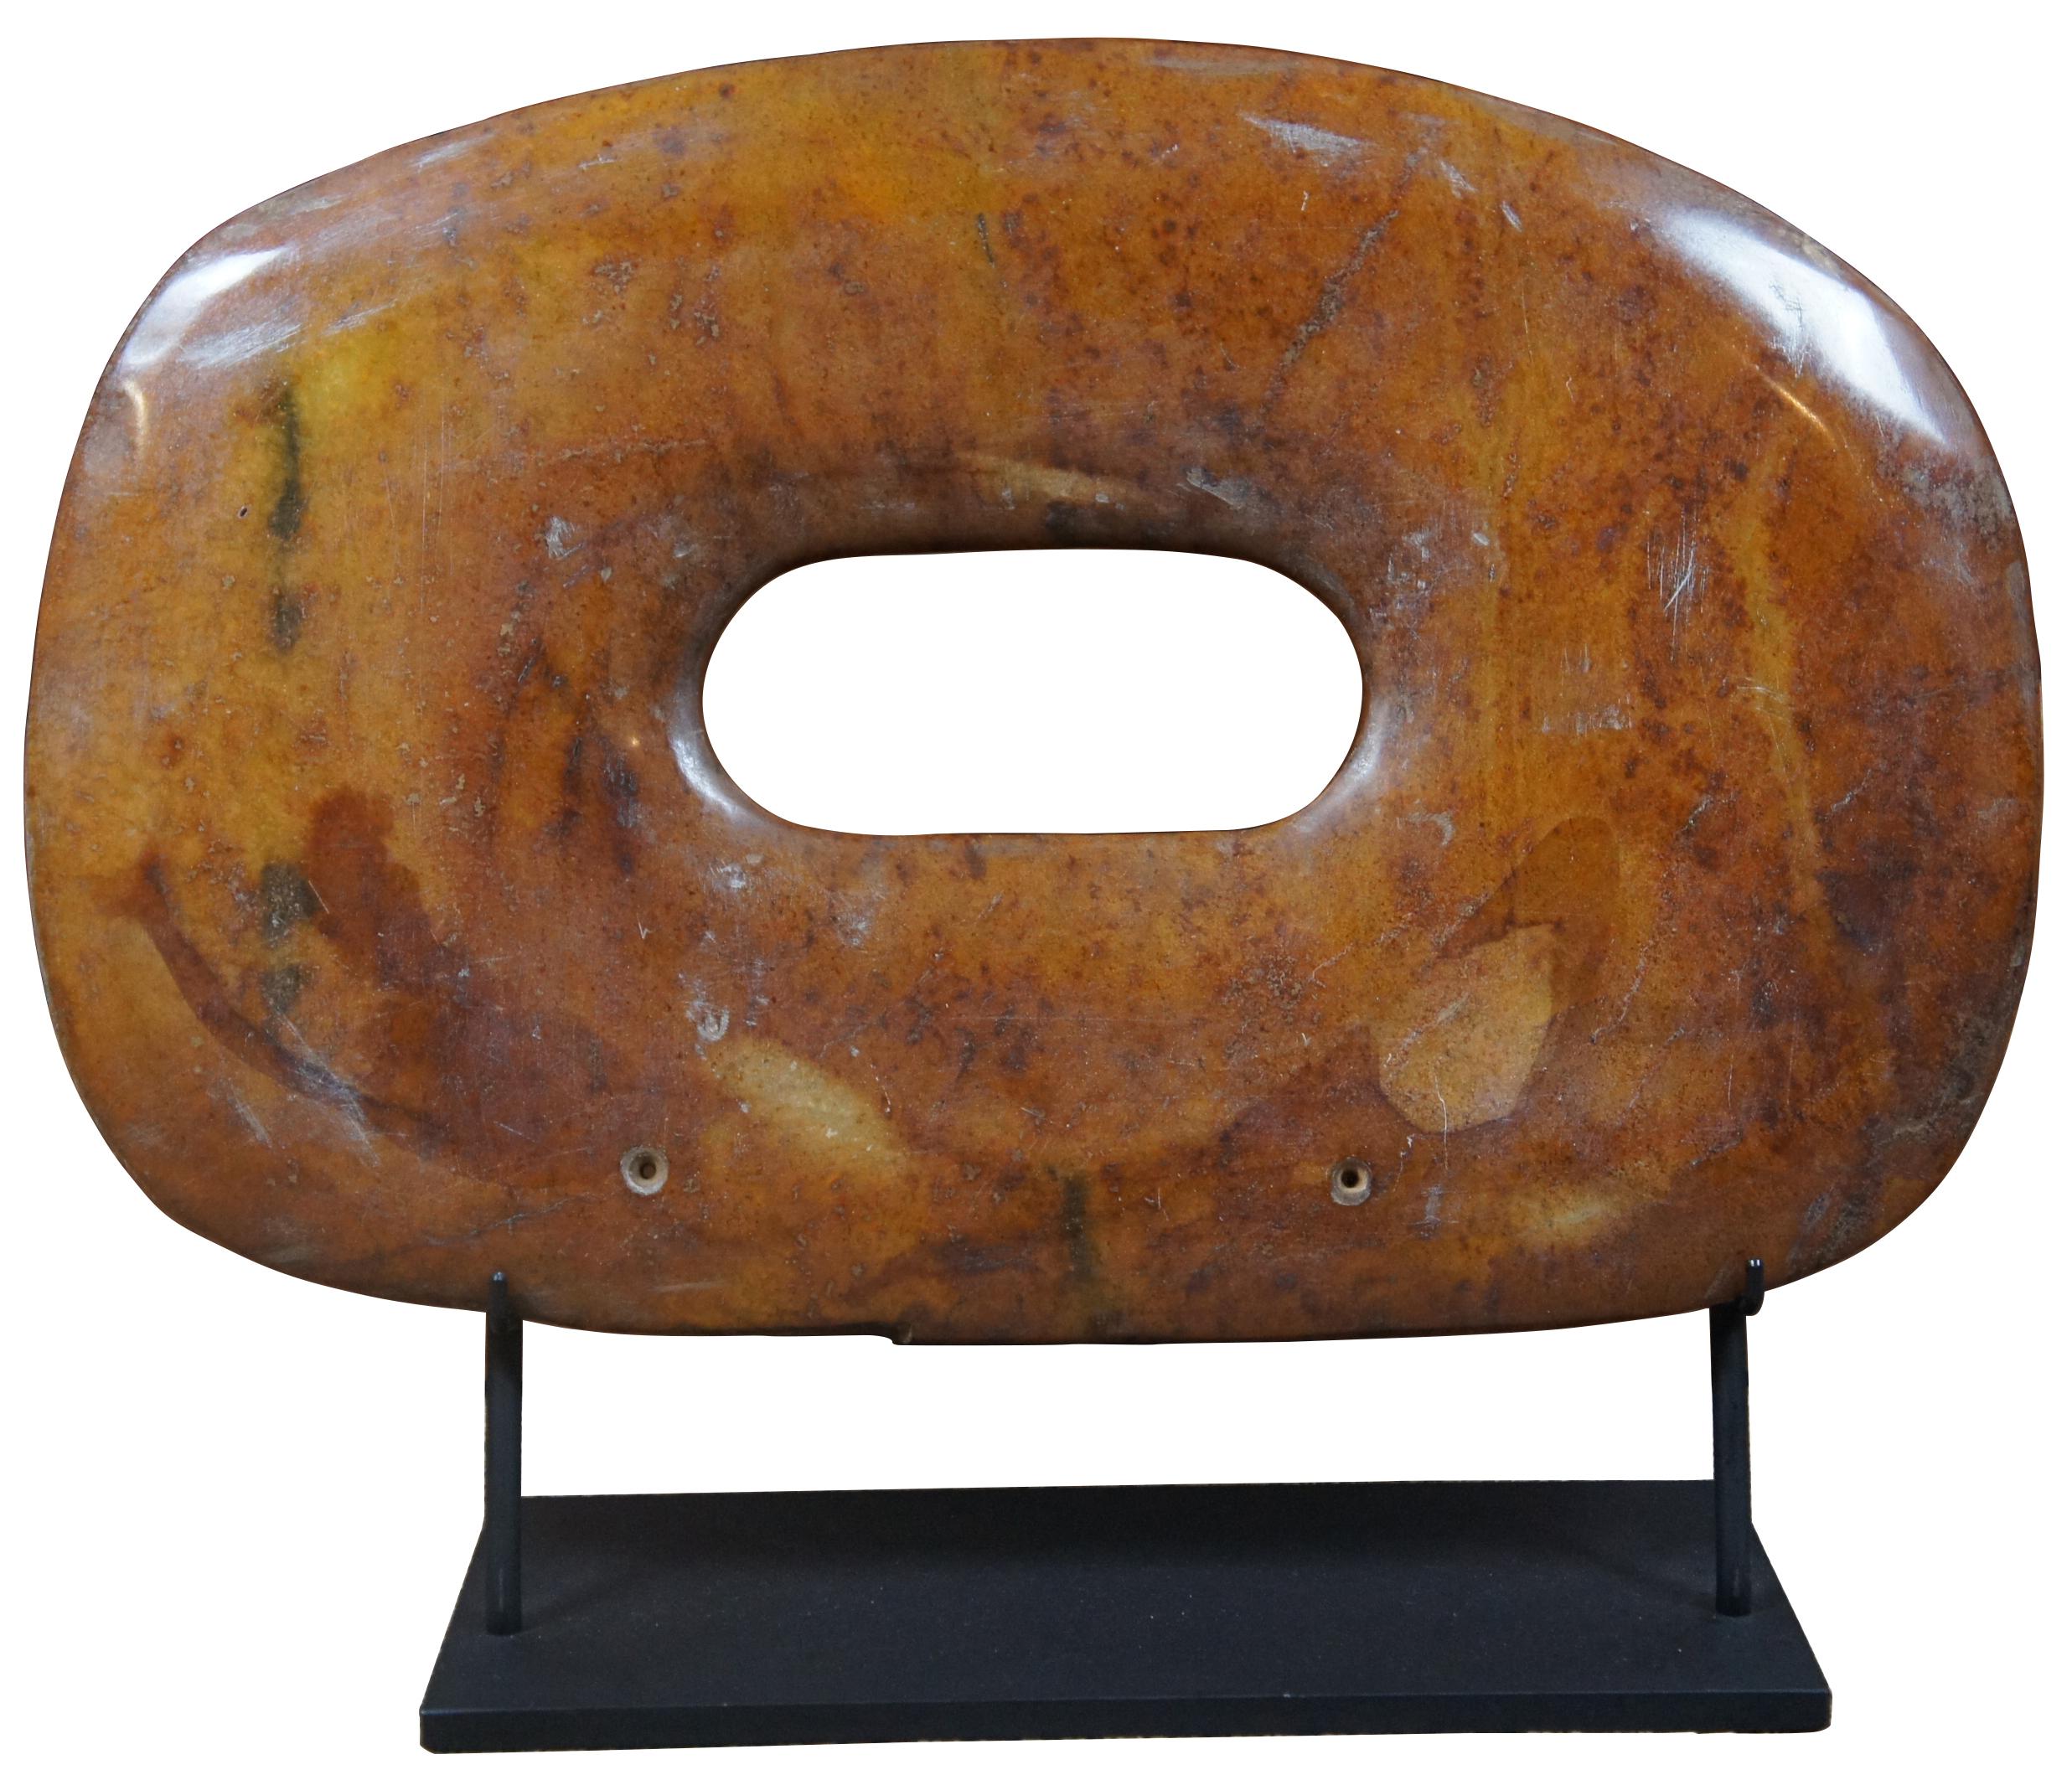 Paar orange/braune, aus Stein geschnitzte Bi-Scheiben. Die Bi- oder Pi-Scheibe ist eine flache Scheibe mit einem runden Loch in der Mitte. Die Scheiben stammen aus dem Neolithikum (5.000-2.000 v. Chr.). Archäologen spekulieren, dass die runde Form